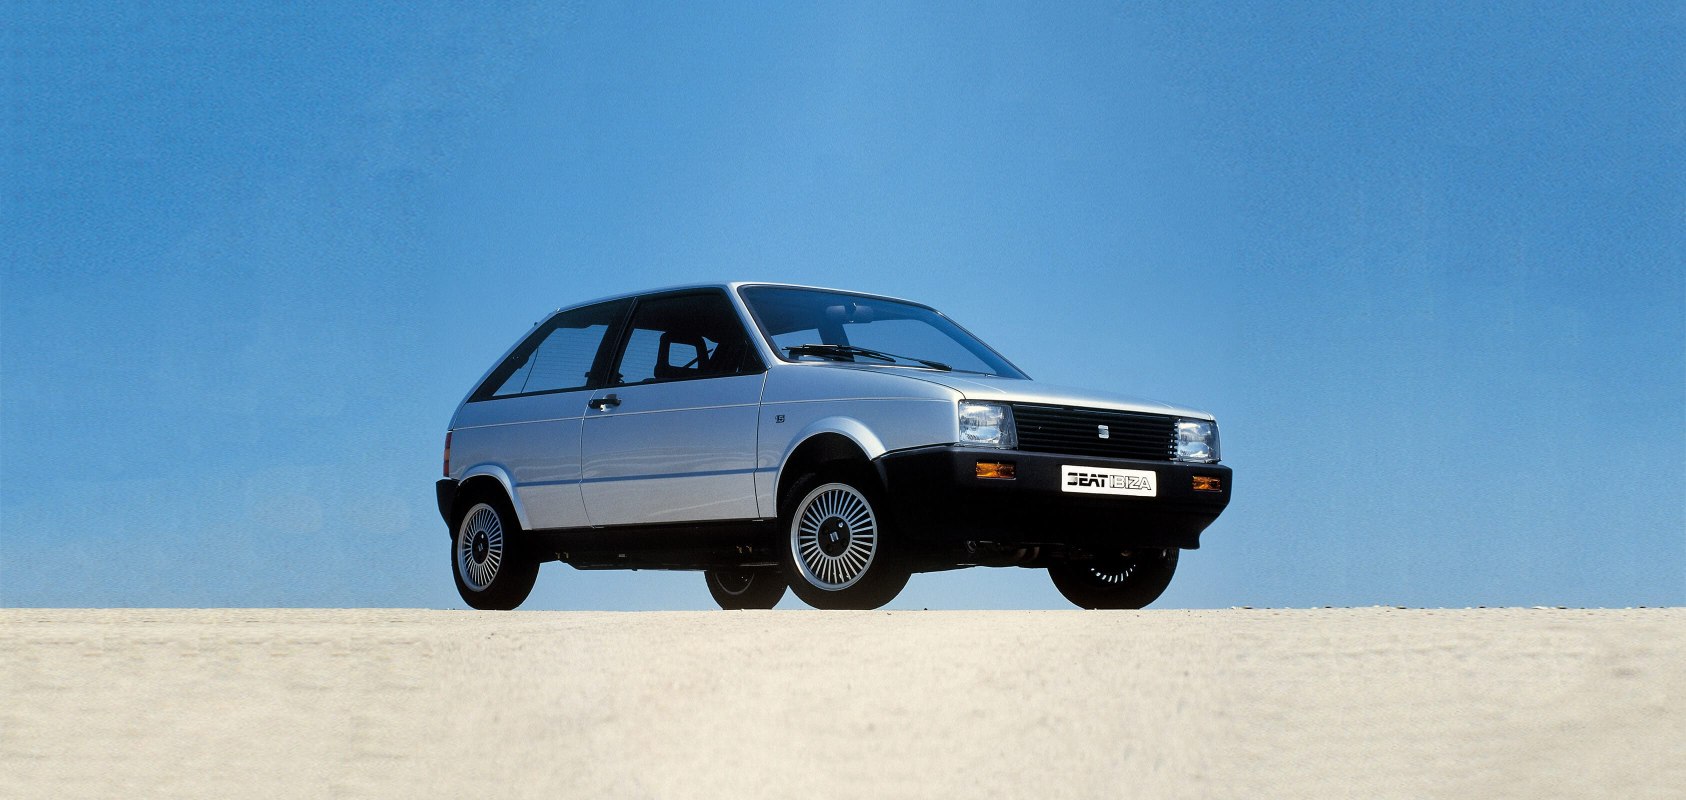 SEATi brändi ajalugu 1980ndatel - originaal SEAT Ibiza luukpära auto